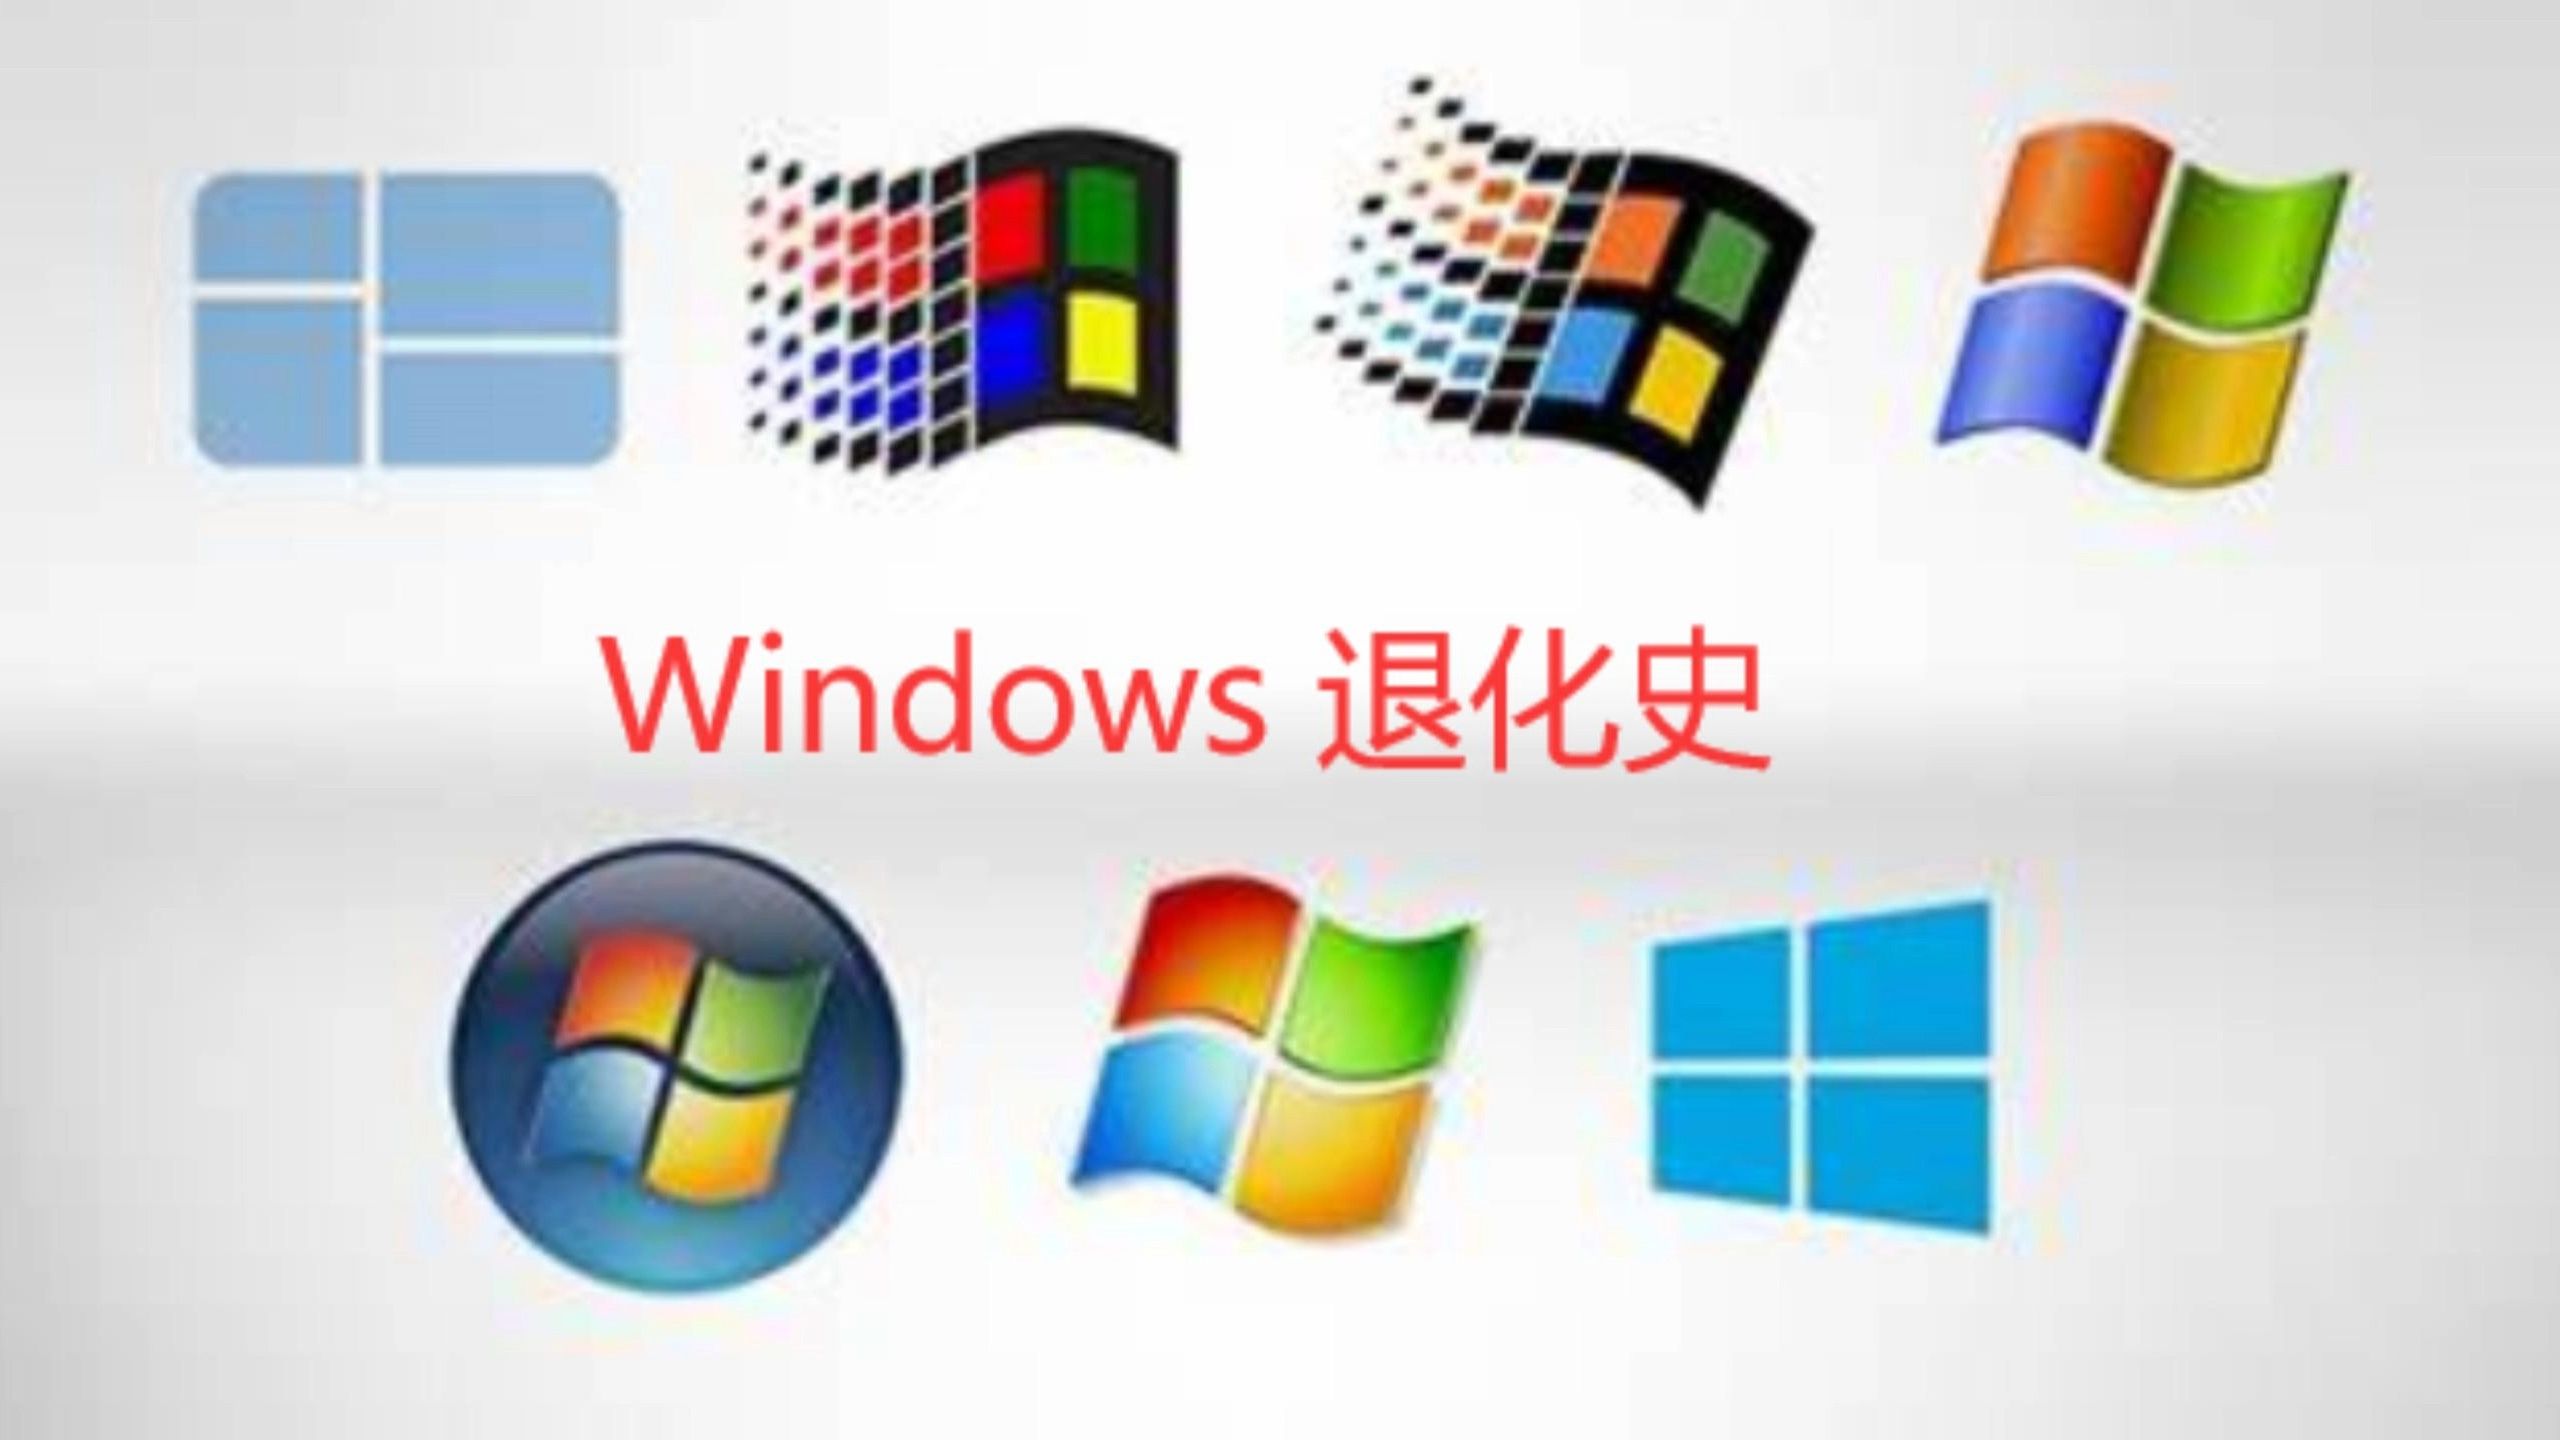 Windows 退化史